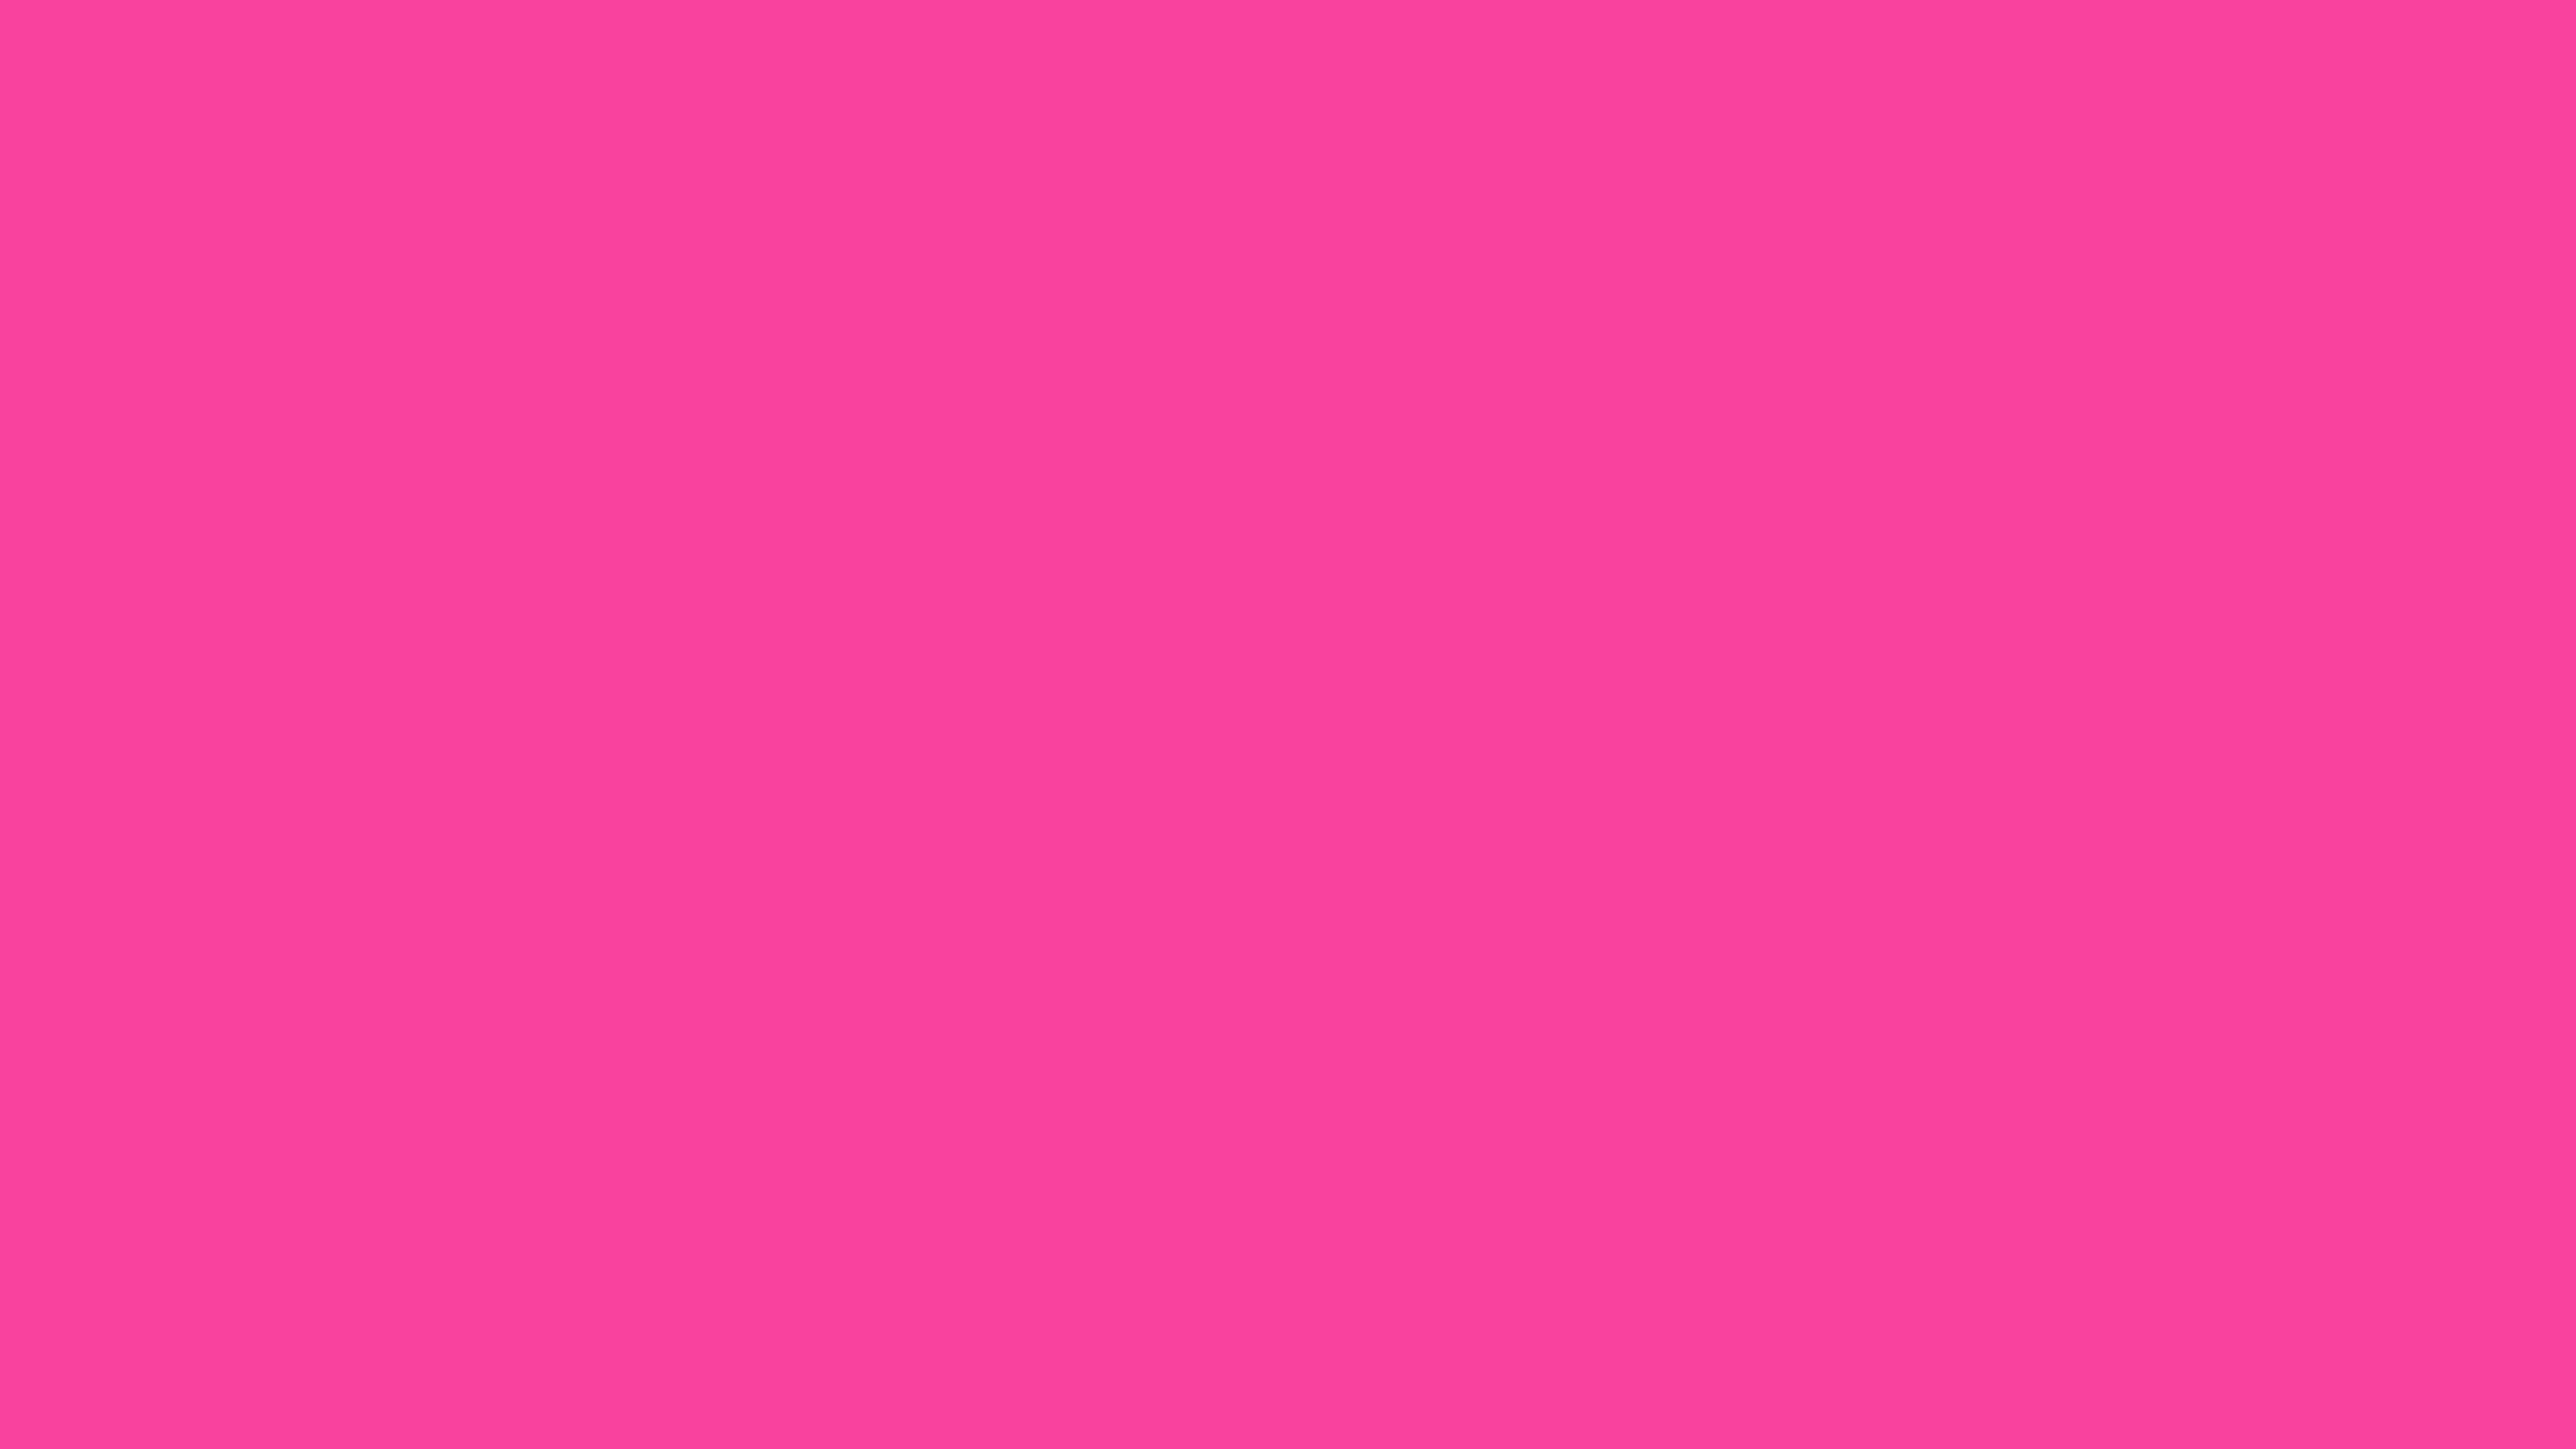 3840x2160 Rose Bonbon Solid Color Background